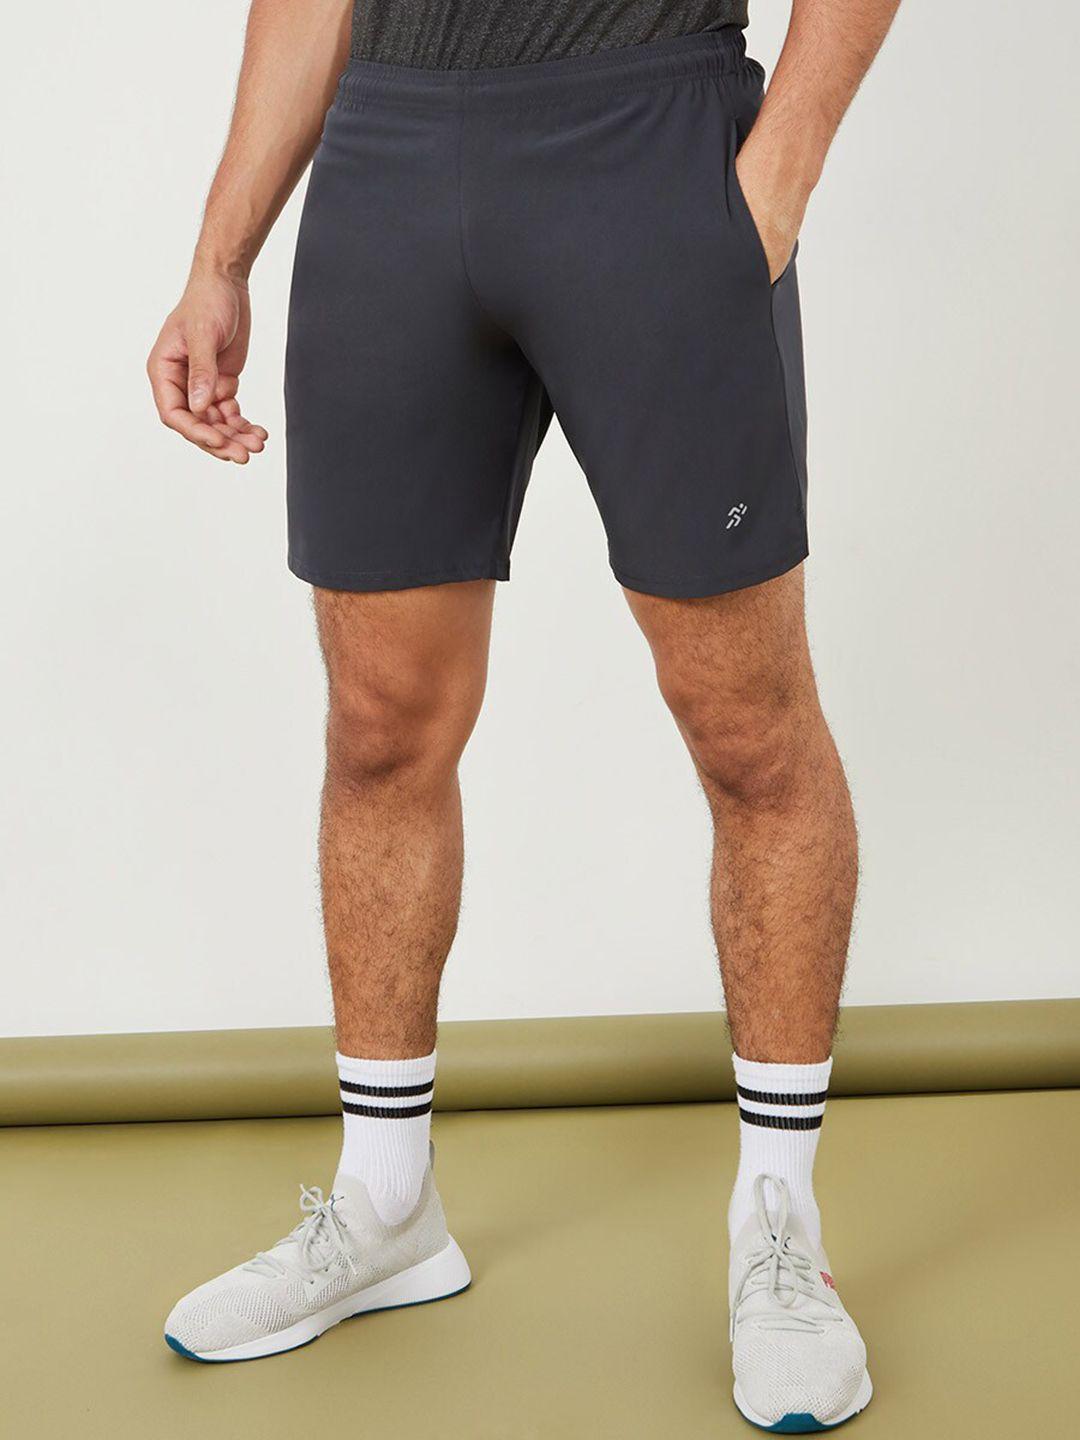 styli-men-grey-sports-shorts